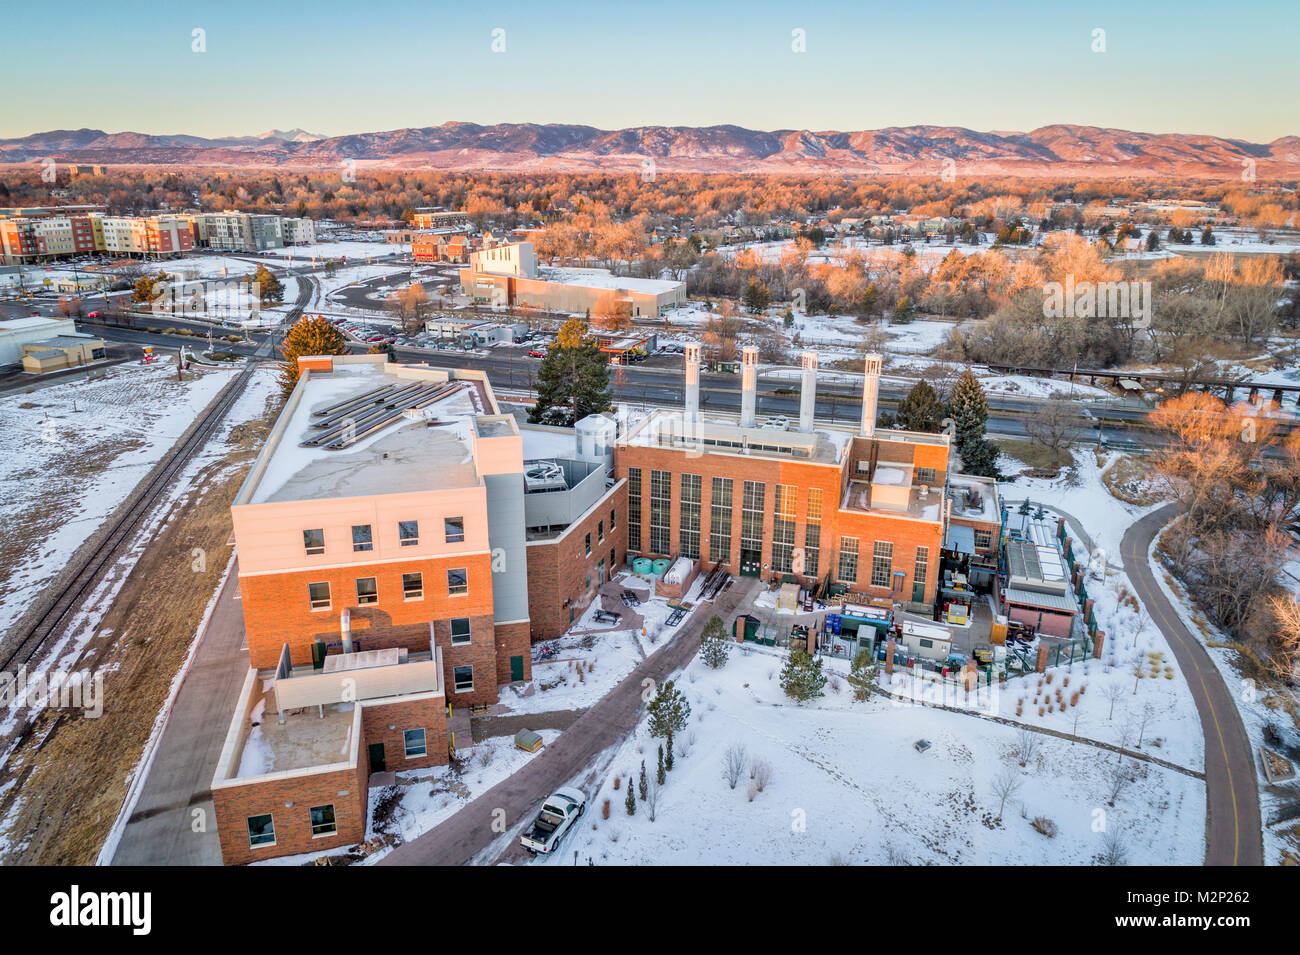 FORT COLLINS, Colorado, USA - 24. Dezember 2016: Kraftwerk Energie Campus der Colorado State University - ein neues Gebäude in 2014 und historischen München abgeschlossen Stockfoto